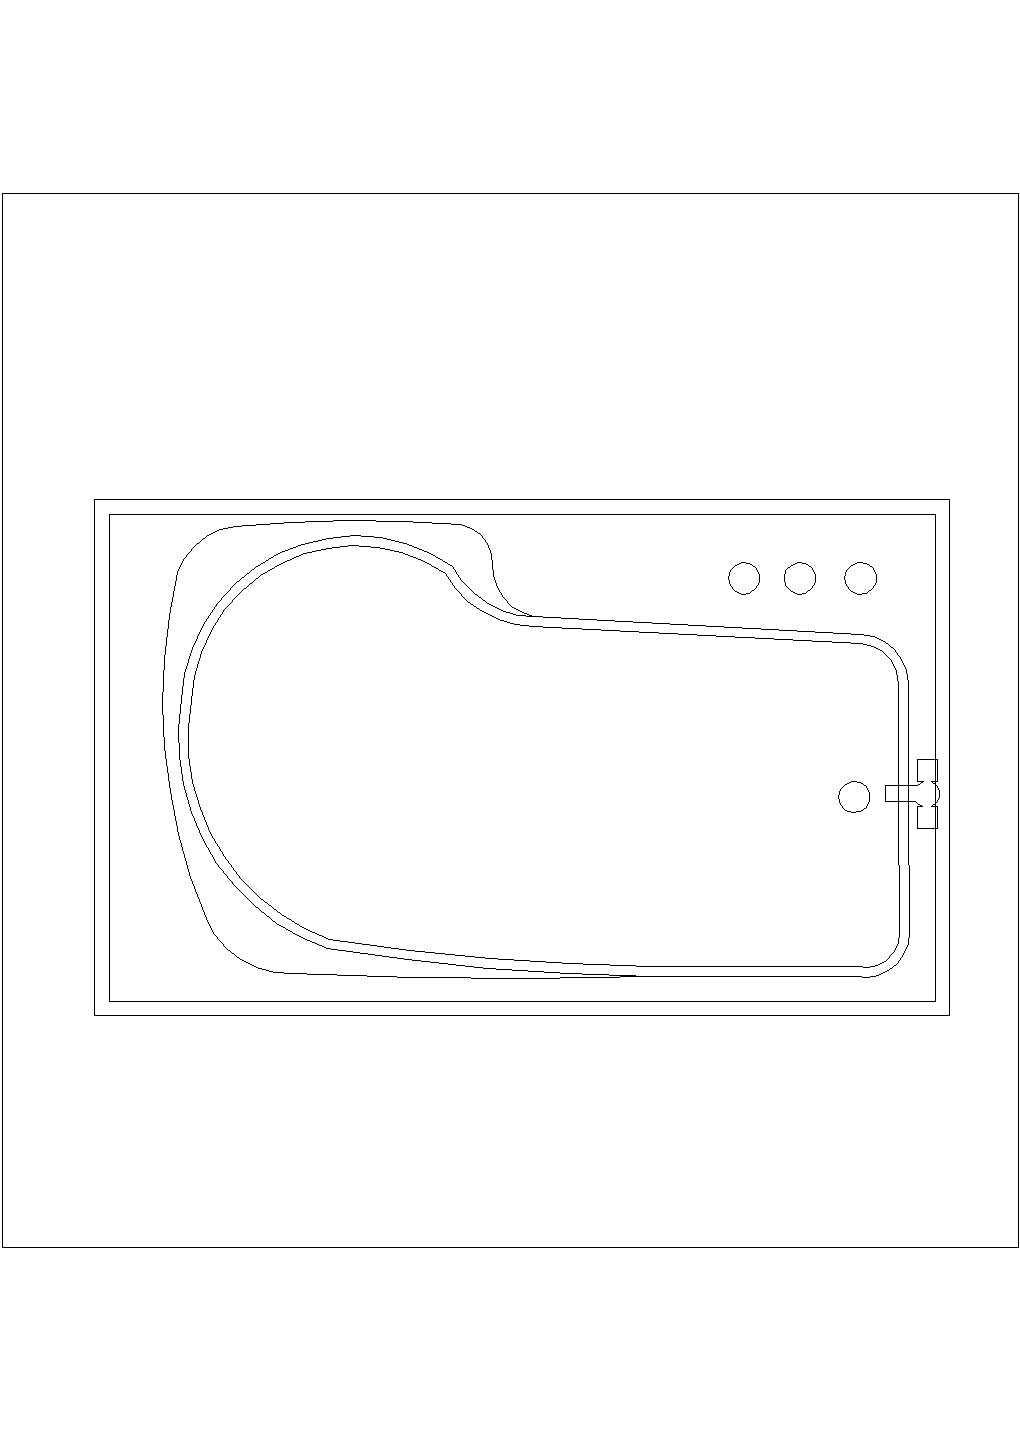 某浴缸CAD完整节点构造施工图纸